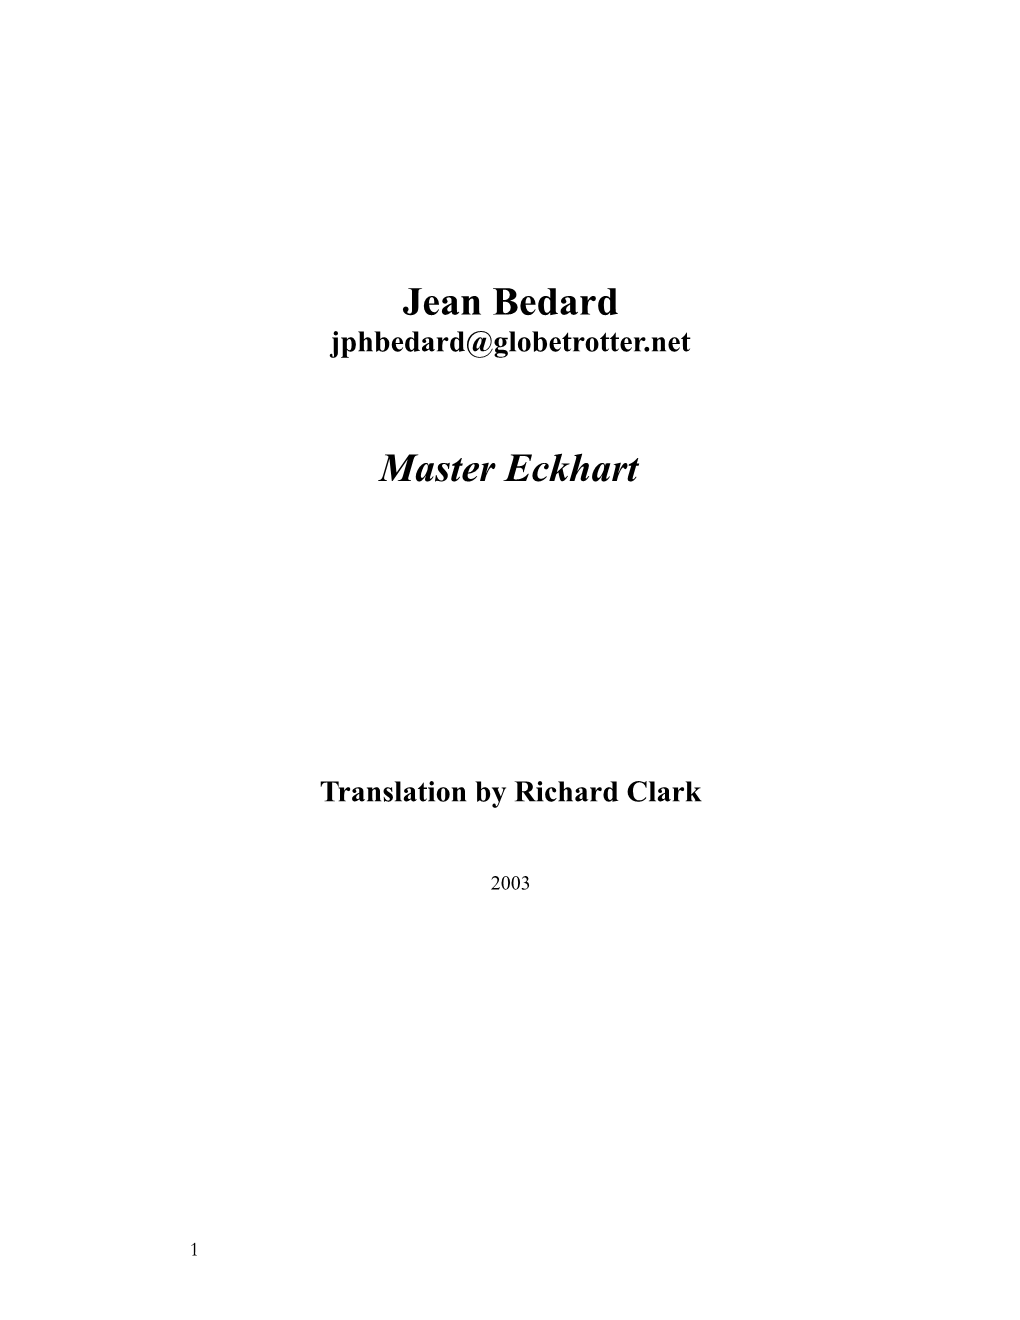 Jean Bedard Master Eckhart